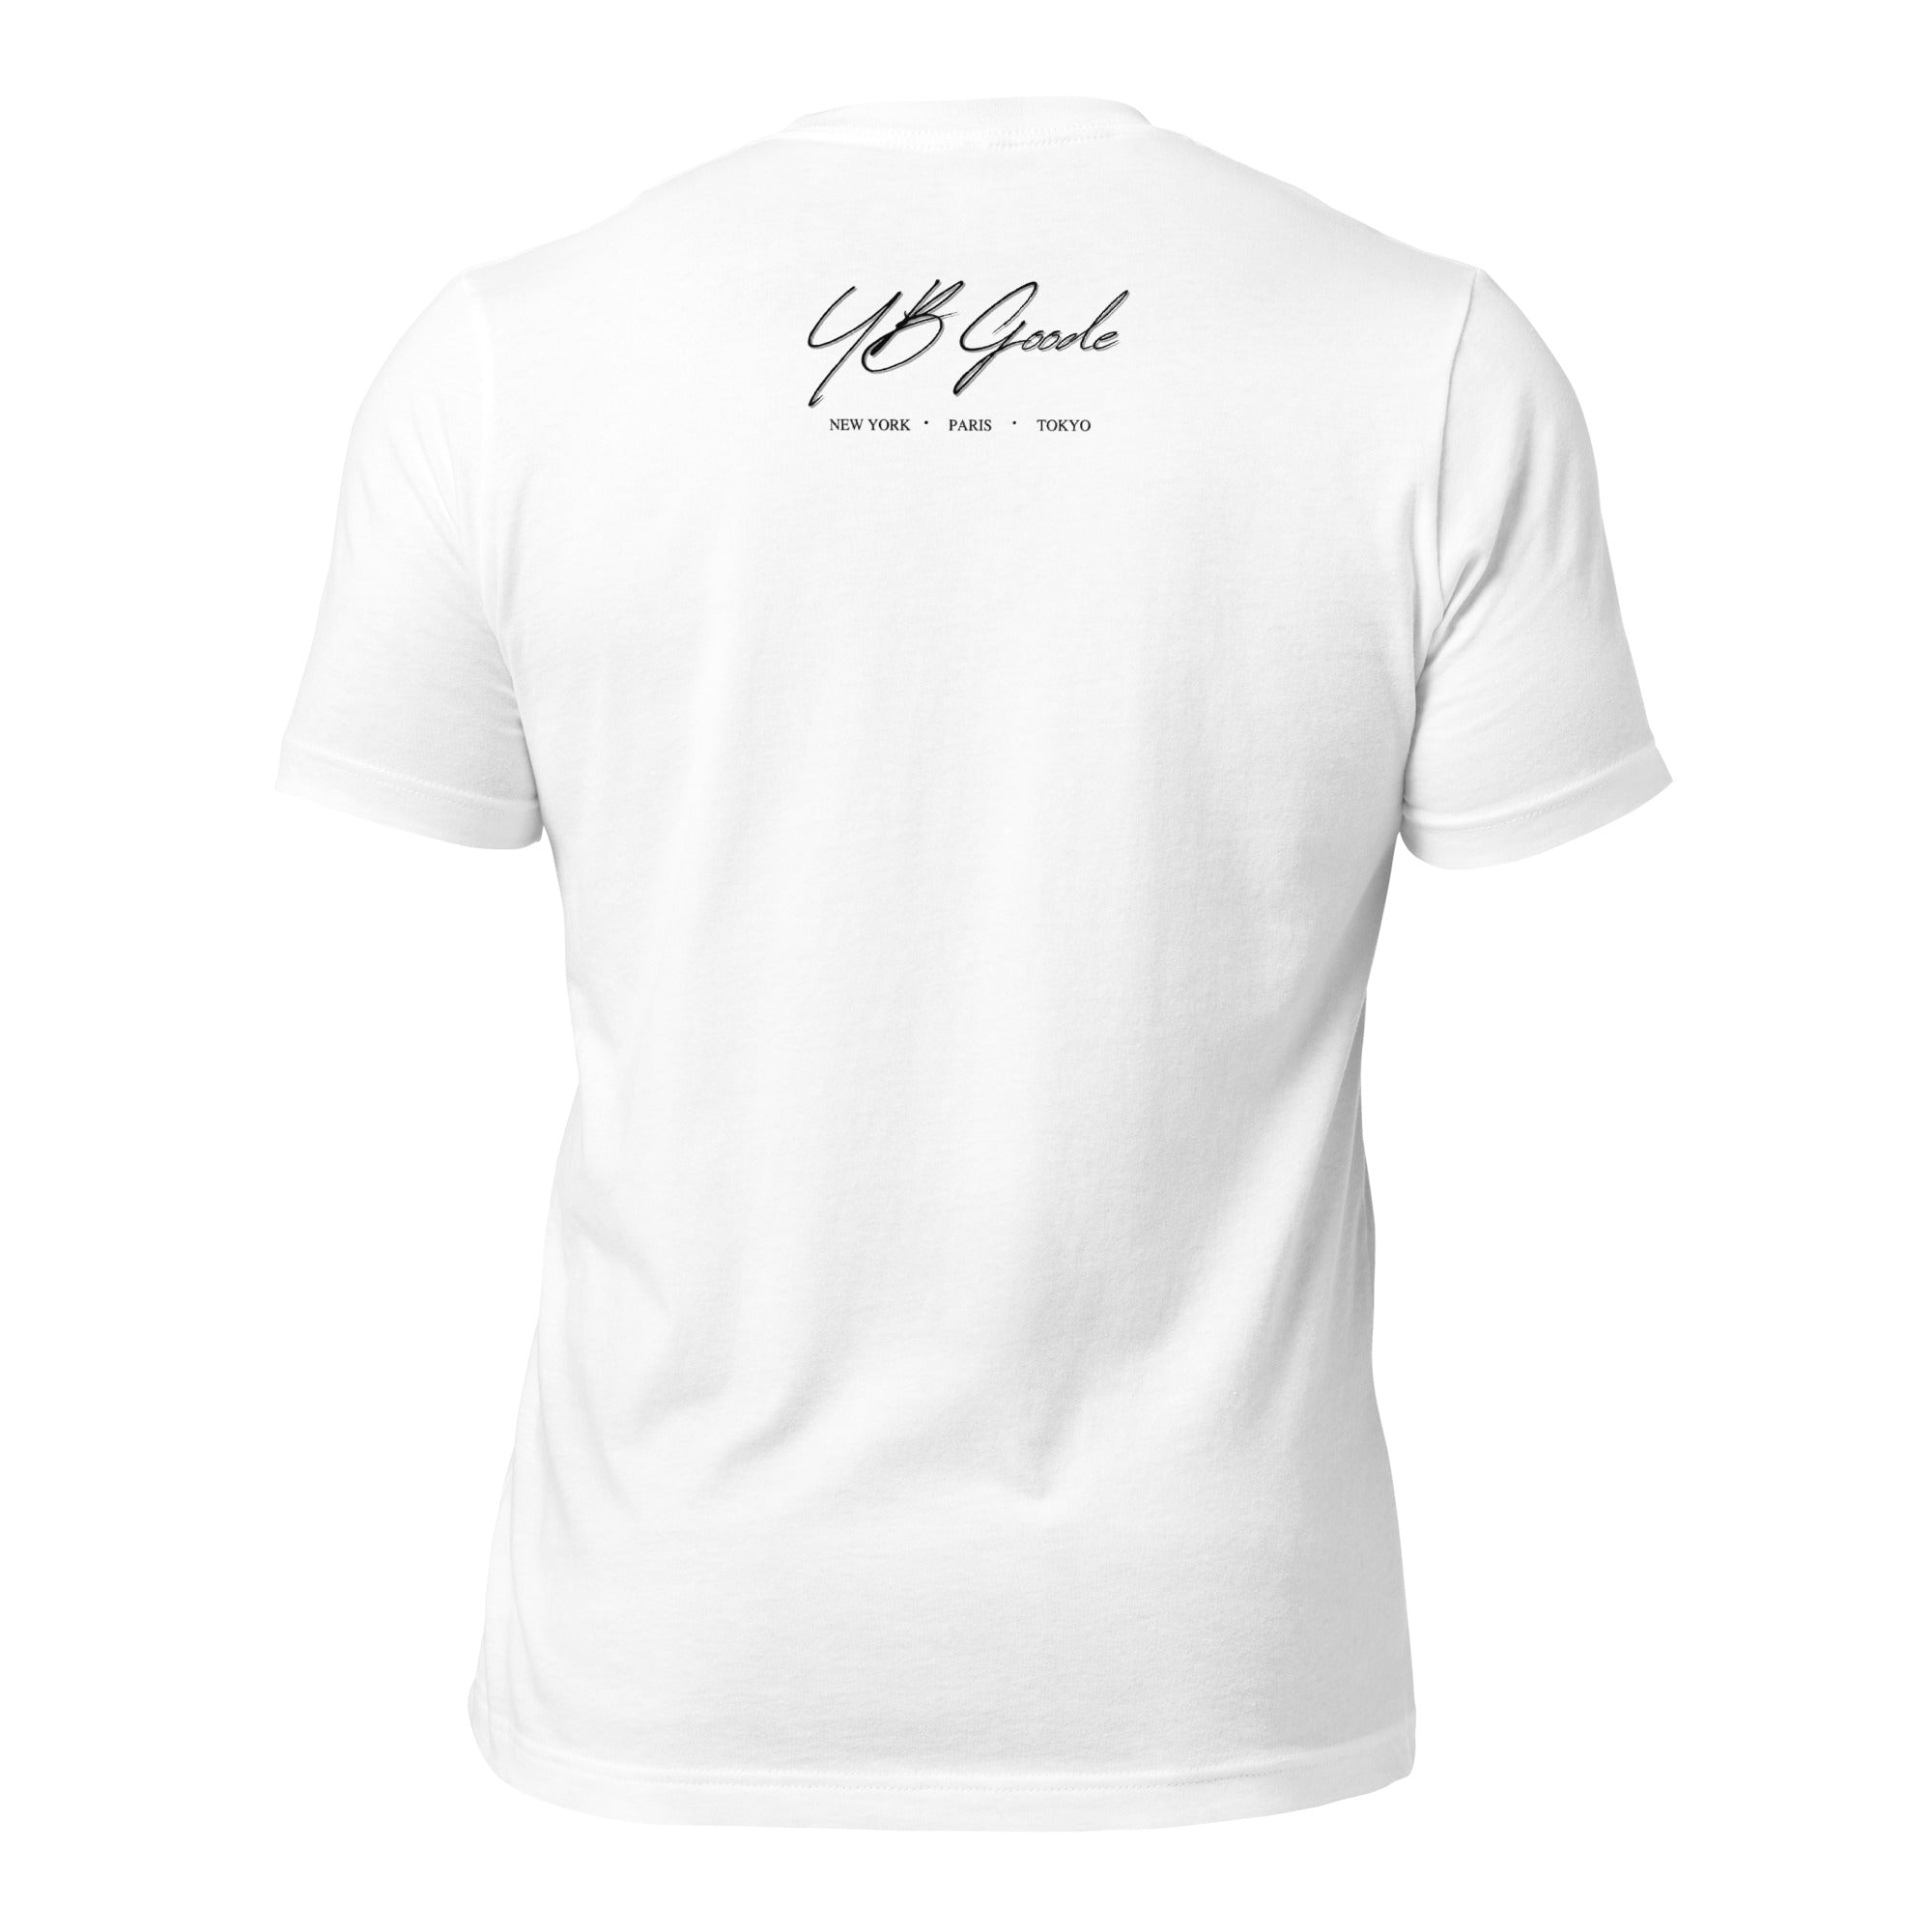 NO SHORTS "Say Less" T-shirt (white)